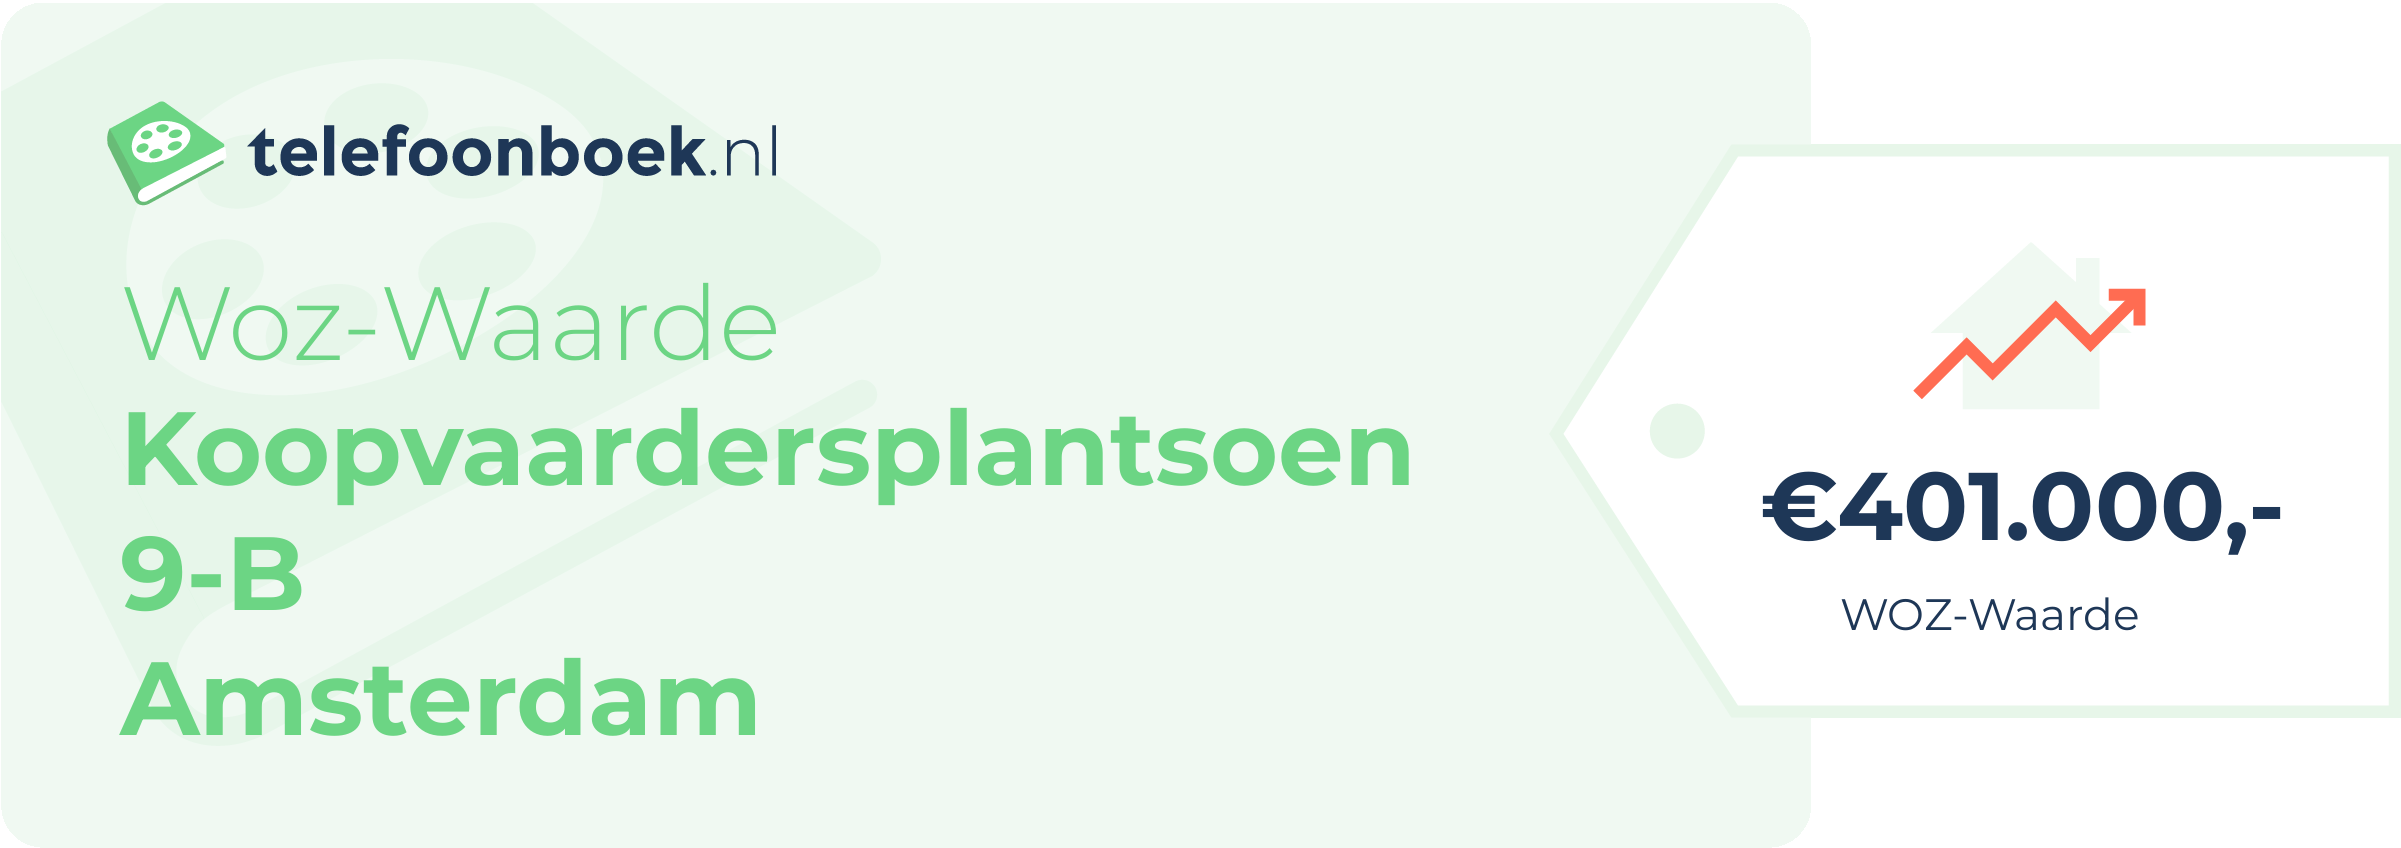 WOZ-waarde Koopvaardersplantsoen 9-B Amsterdam